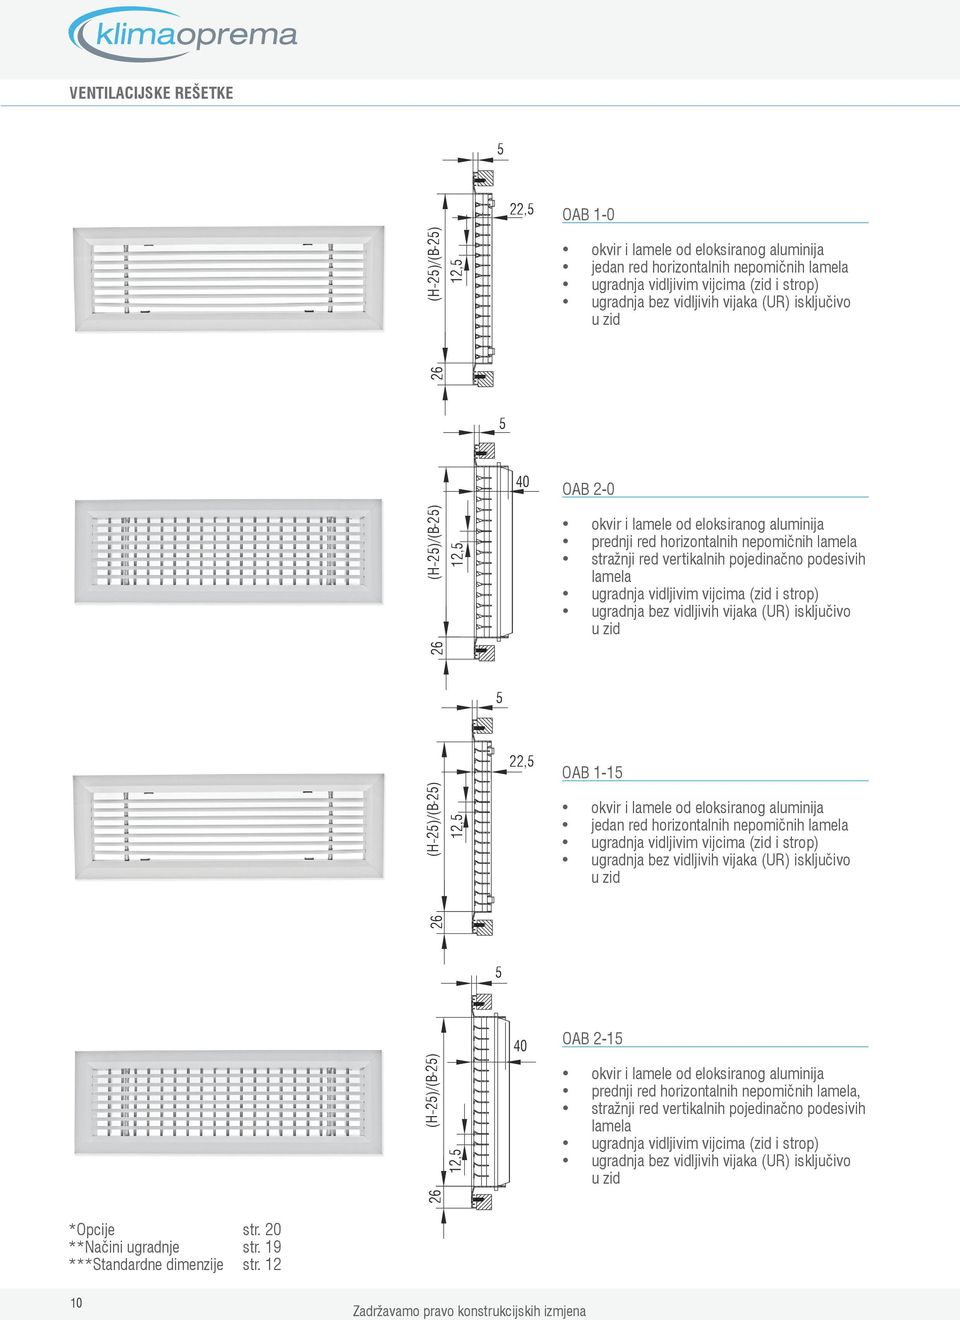 vidljivih vijaka (UR) isključivo u zid ()/() 1,, OA 11 okvir i lamele od eloksiranog aluminija jedan red horizontalnih nepomičnih lamela ugradnja vidljivim vijcima (zid i strop) ugradnja bez